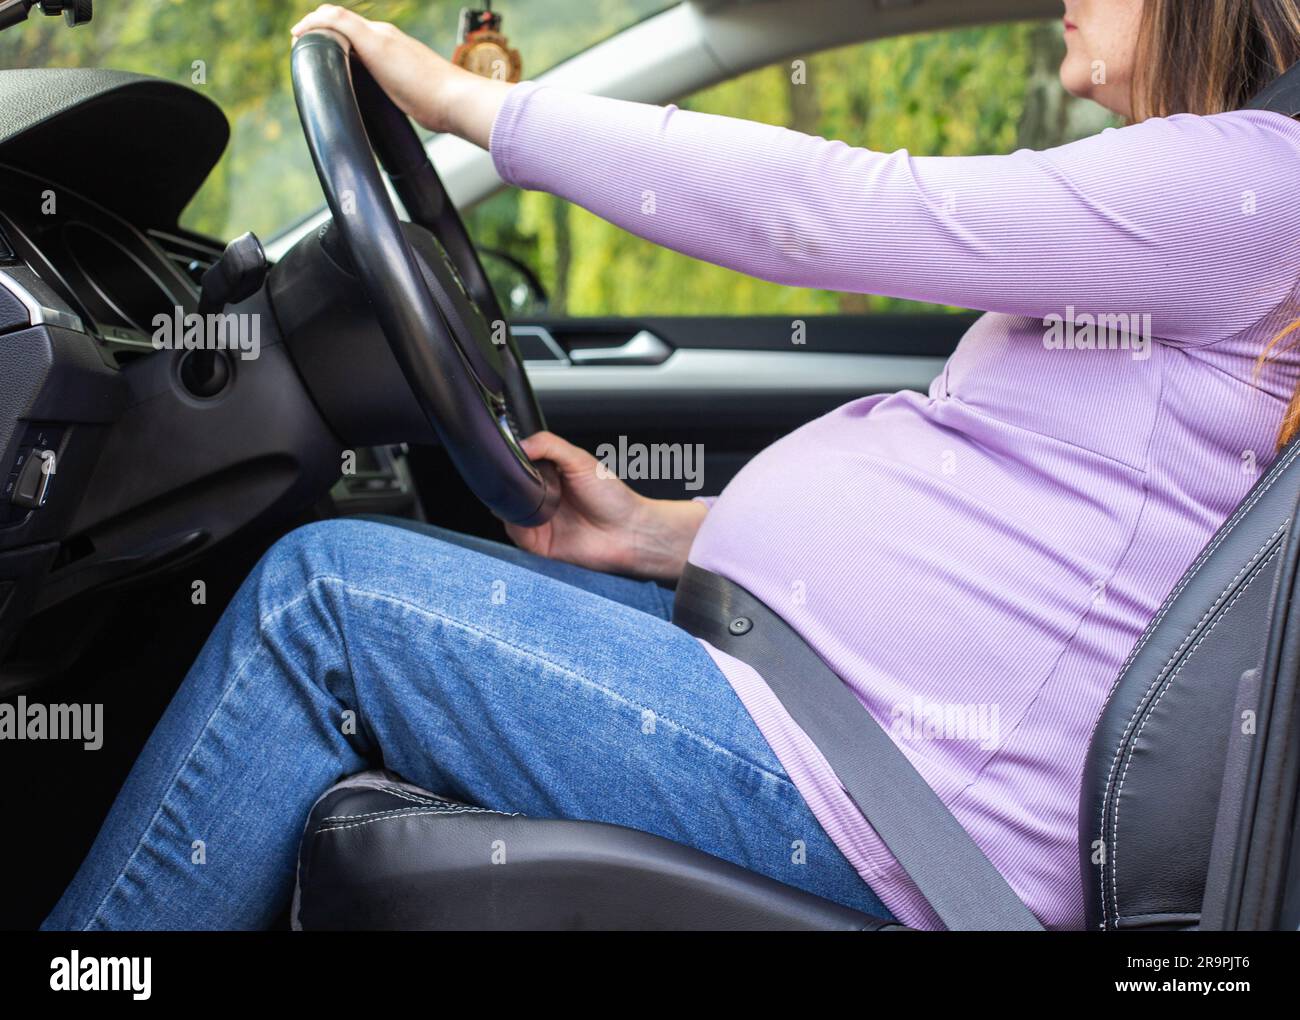 Schwangere Frau ihr Auto Sicherheitsgurt tragen Stockfotografie